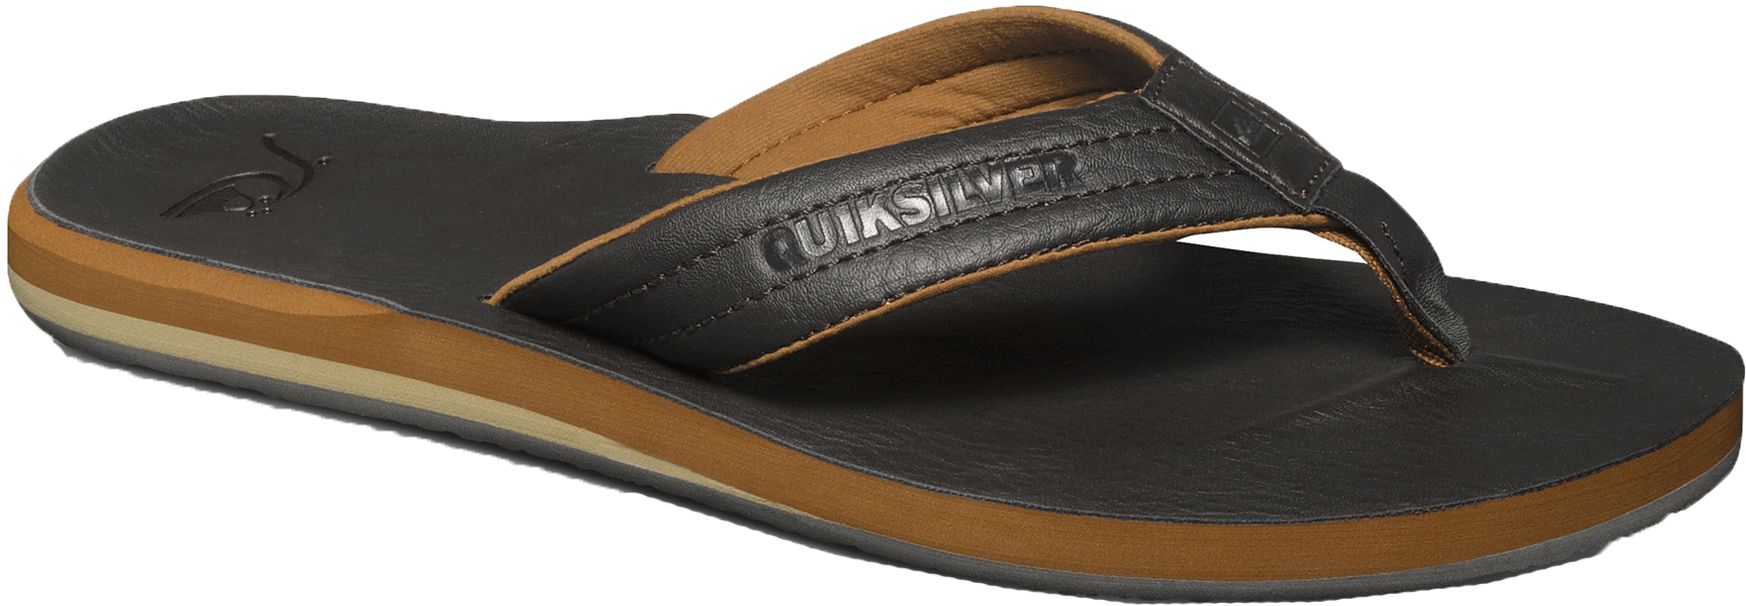 Quiksilver Men's Carver Flip Flops/Sandals  Leather Suede Slip Resistant Water